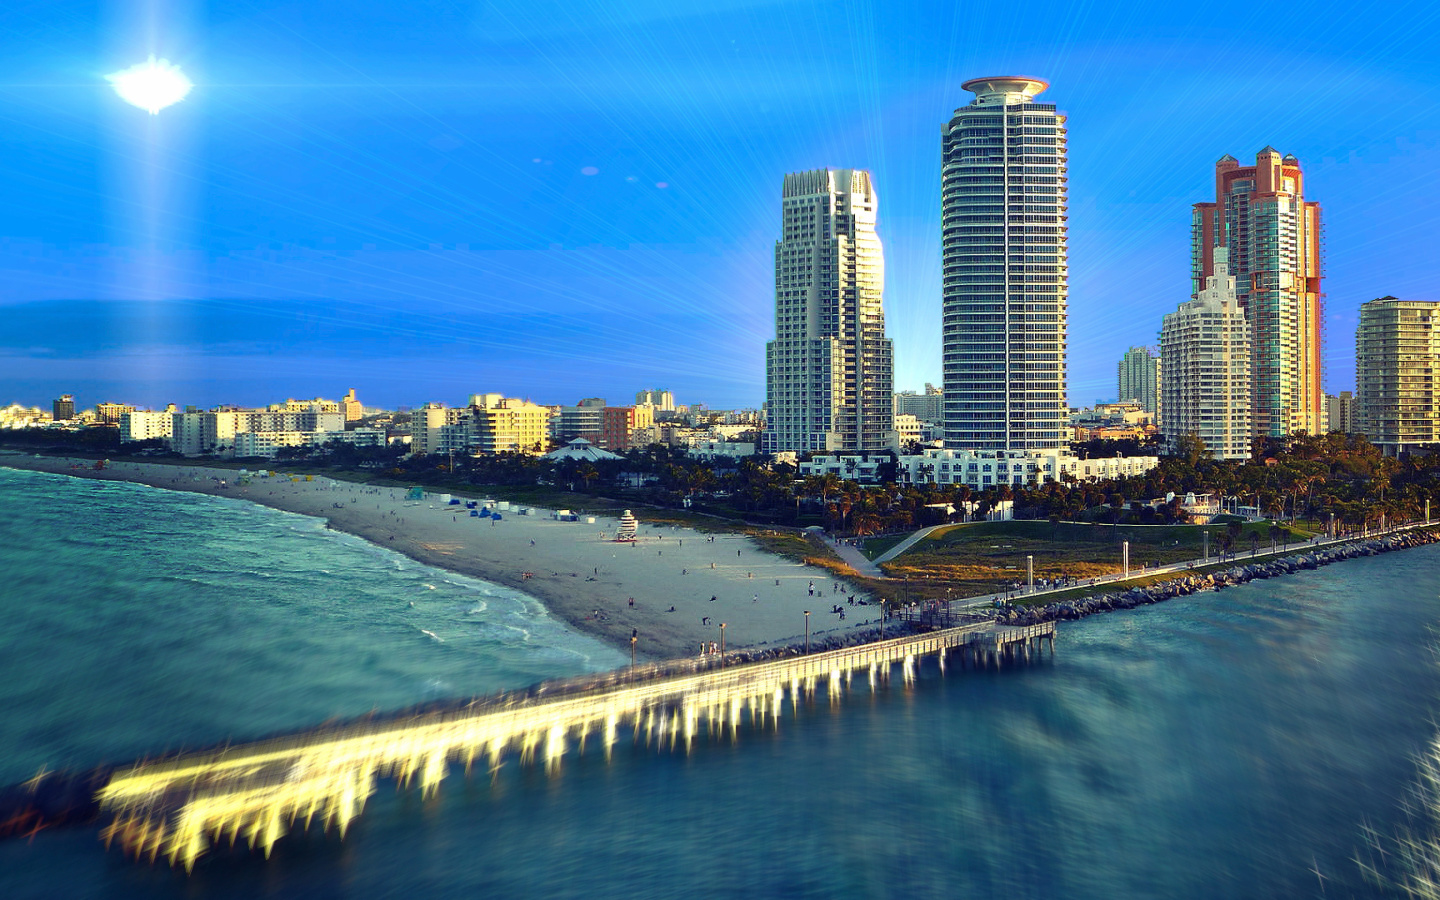 Обои Miami Beach with Hotels 1440x900